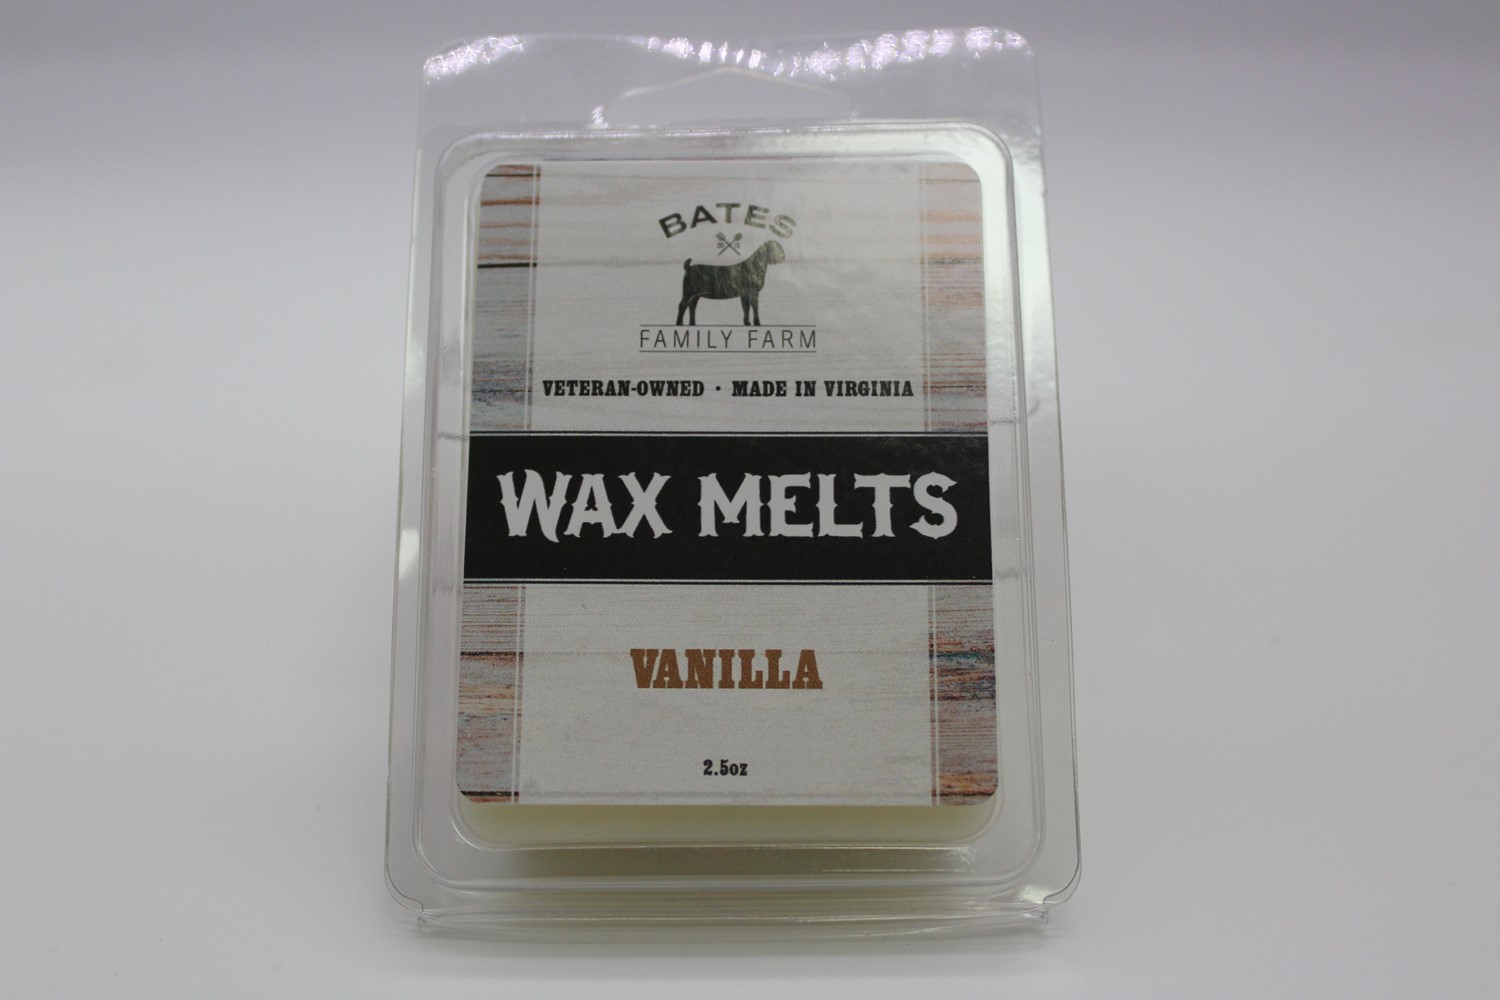 Vanilla wax melt